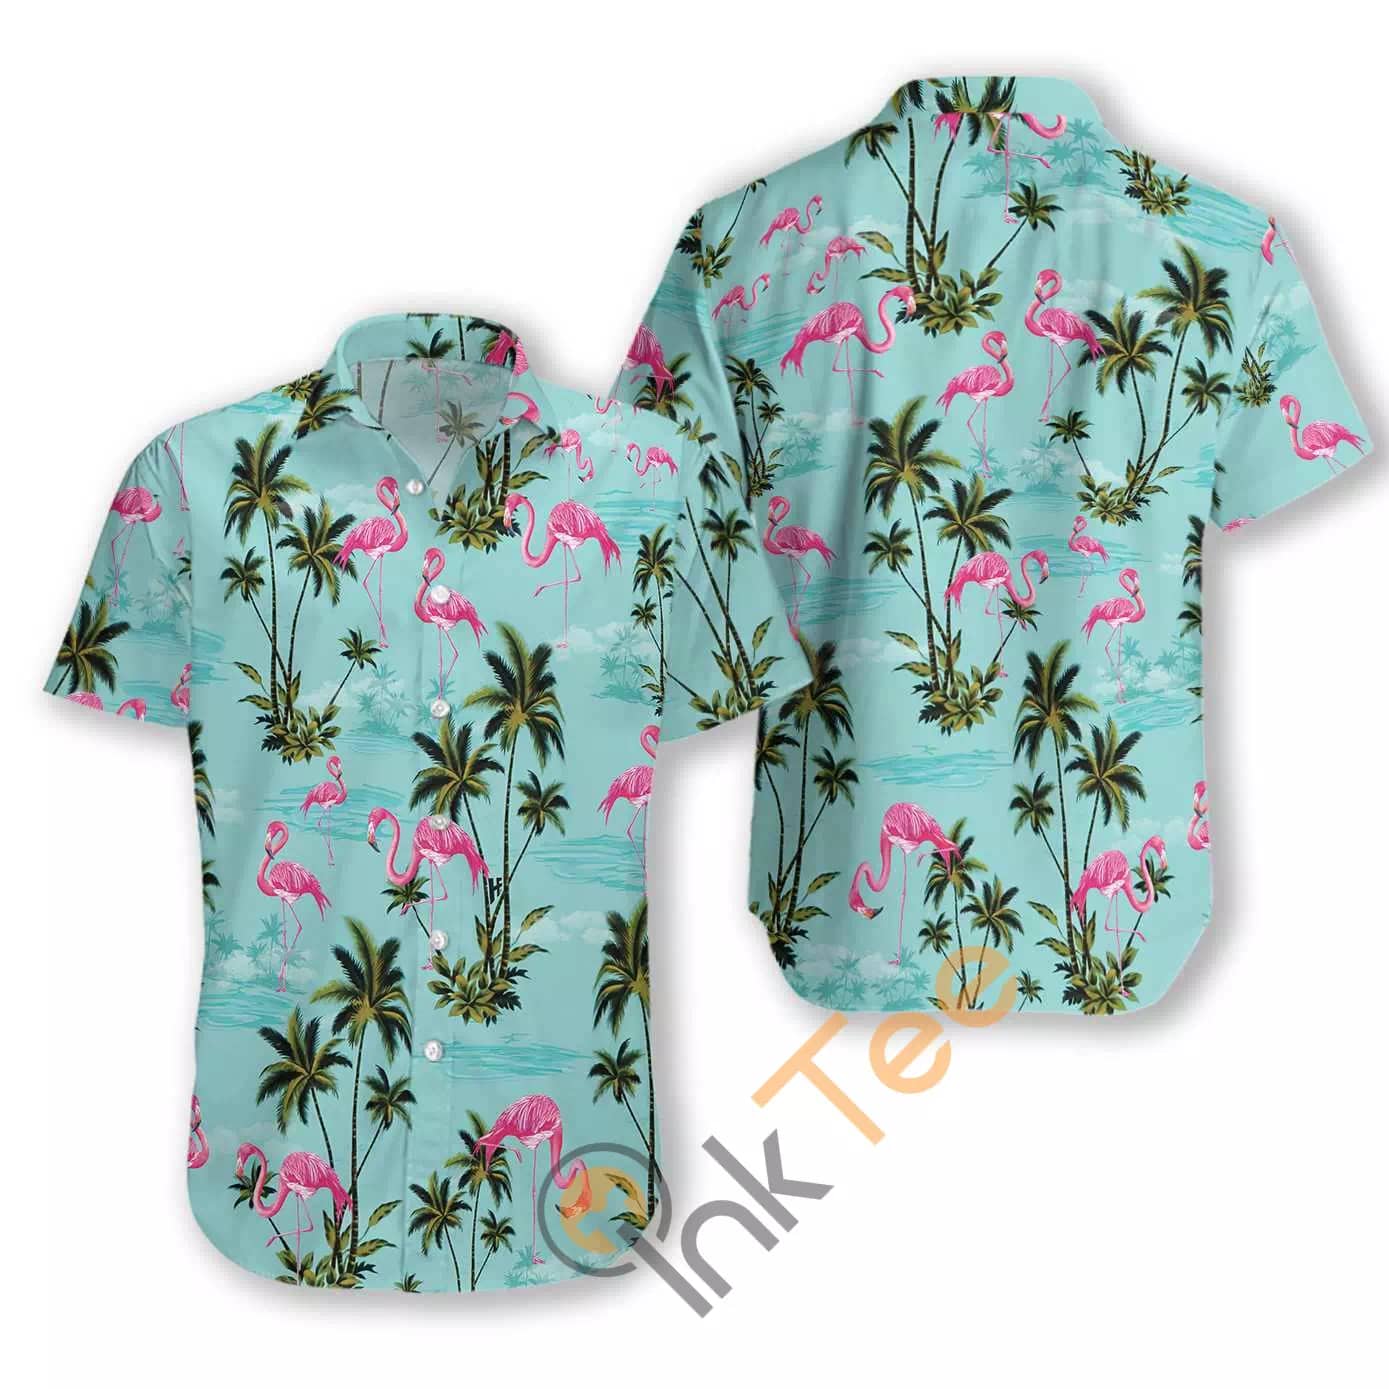 Flamingo 26 N803 Hawaiian shirts